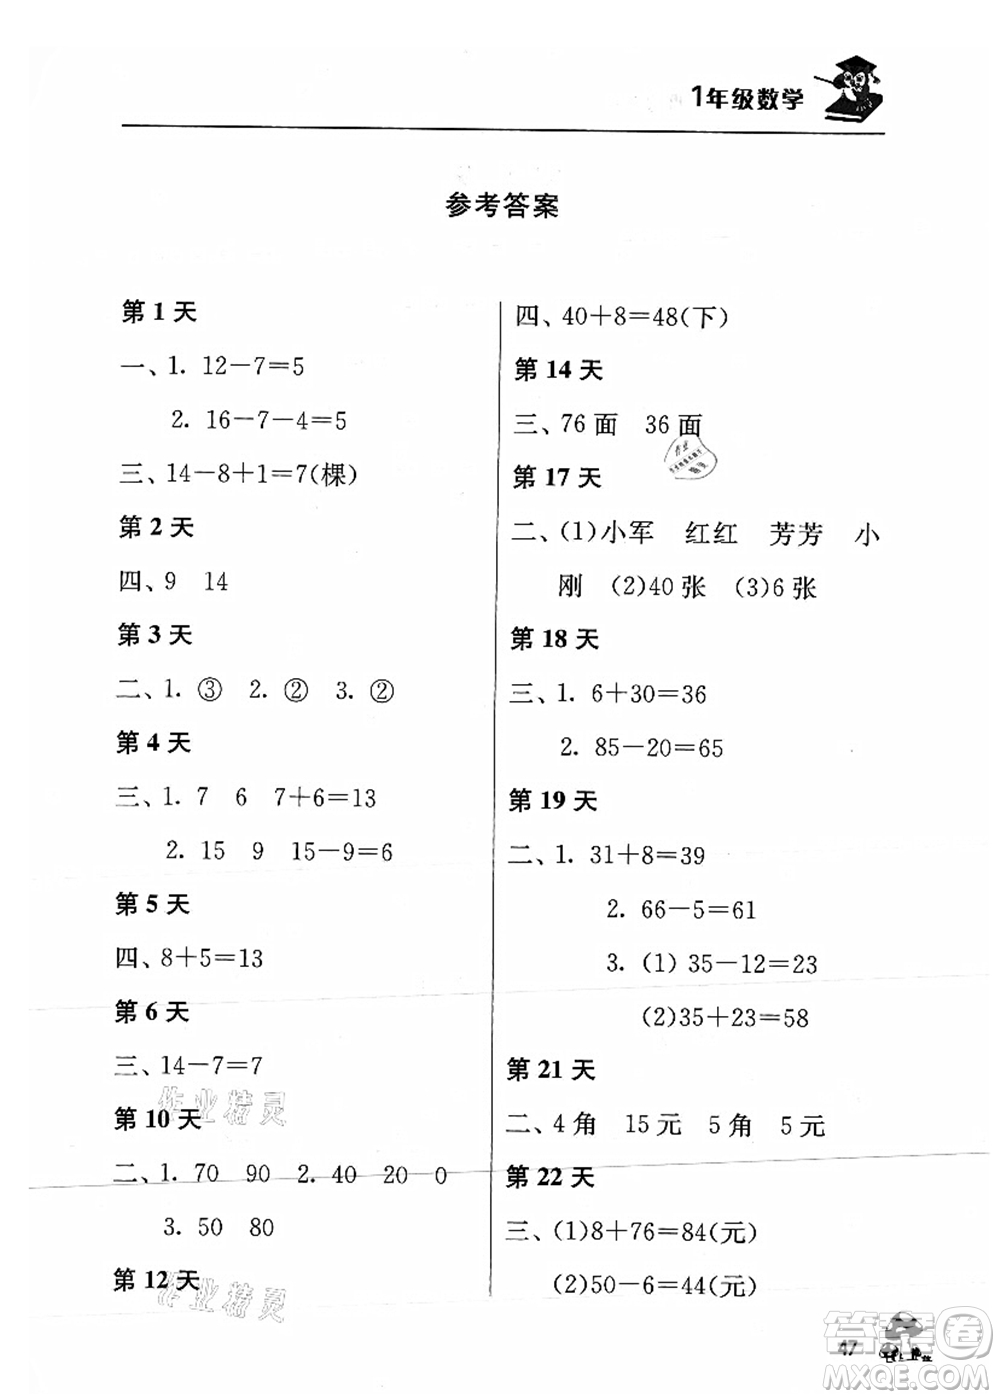 江苏人民出版社2021暑期益智训练营一年级数学答案